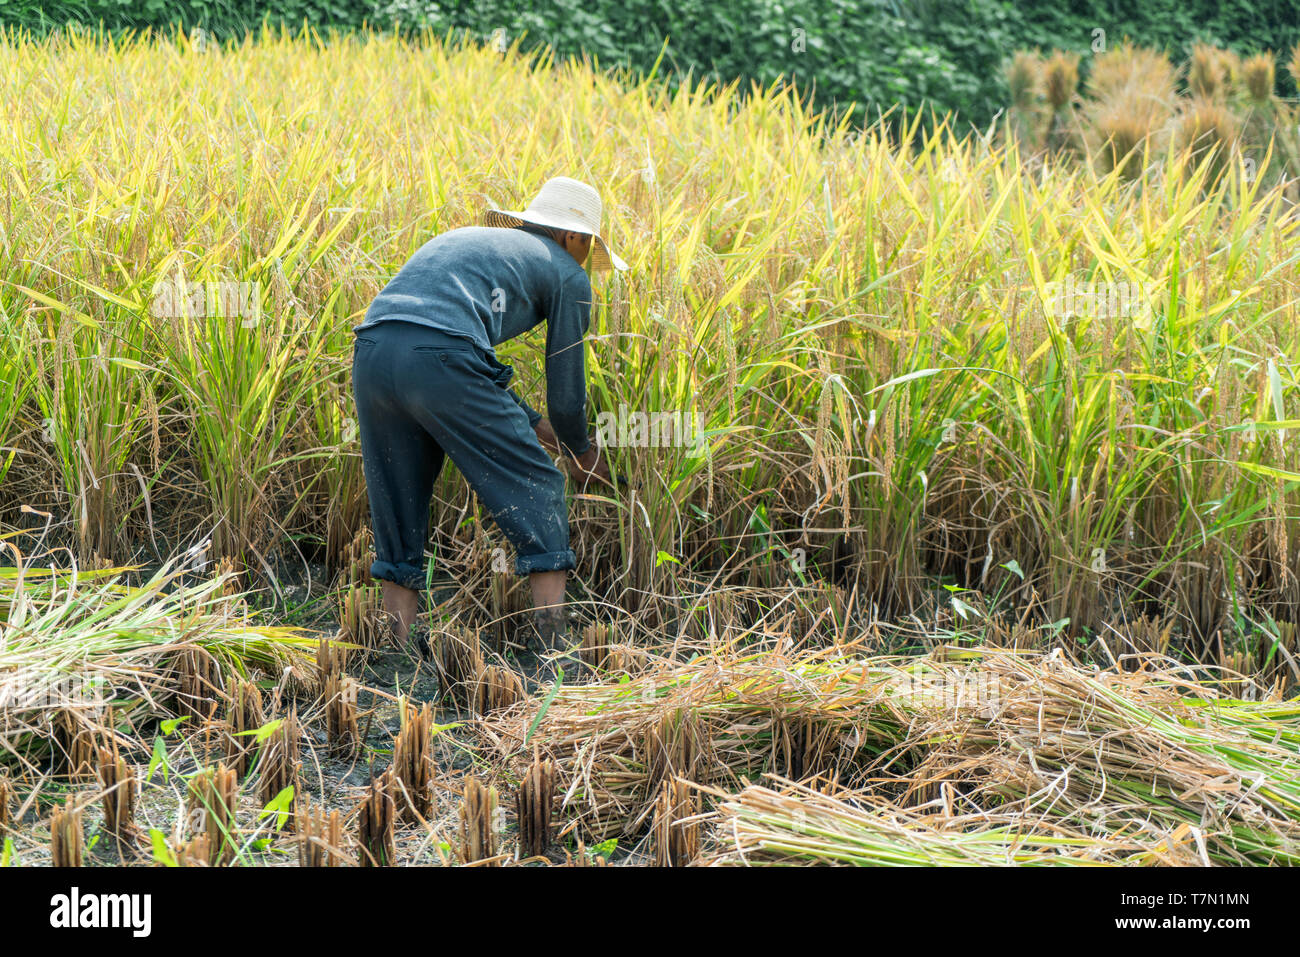 Nella provincia del Hunan, Cina - 15/09/2017: uomo cinese la mietitura del riso su un campo di riso. Foto Stock